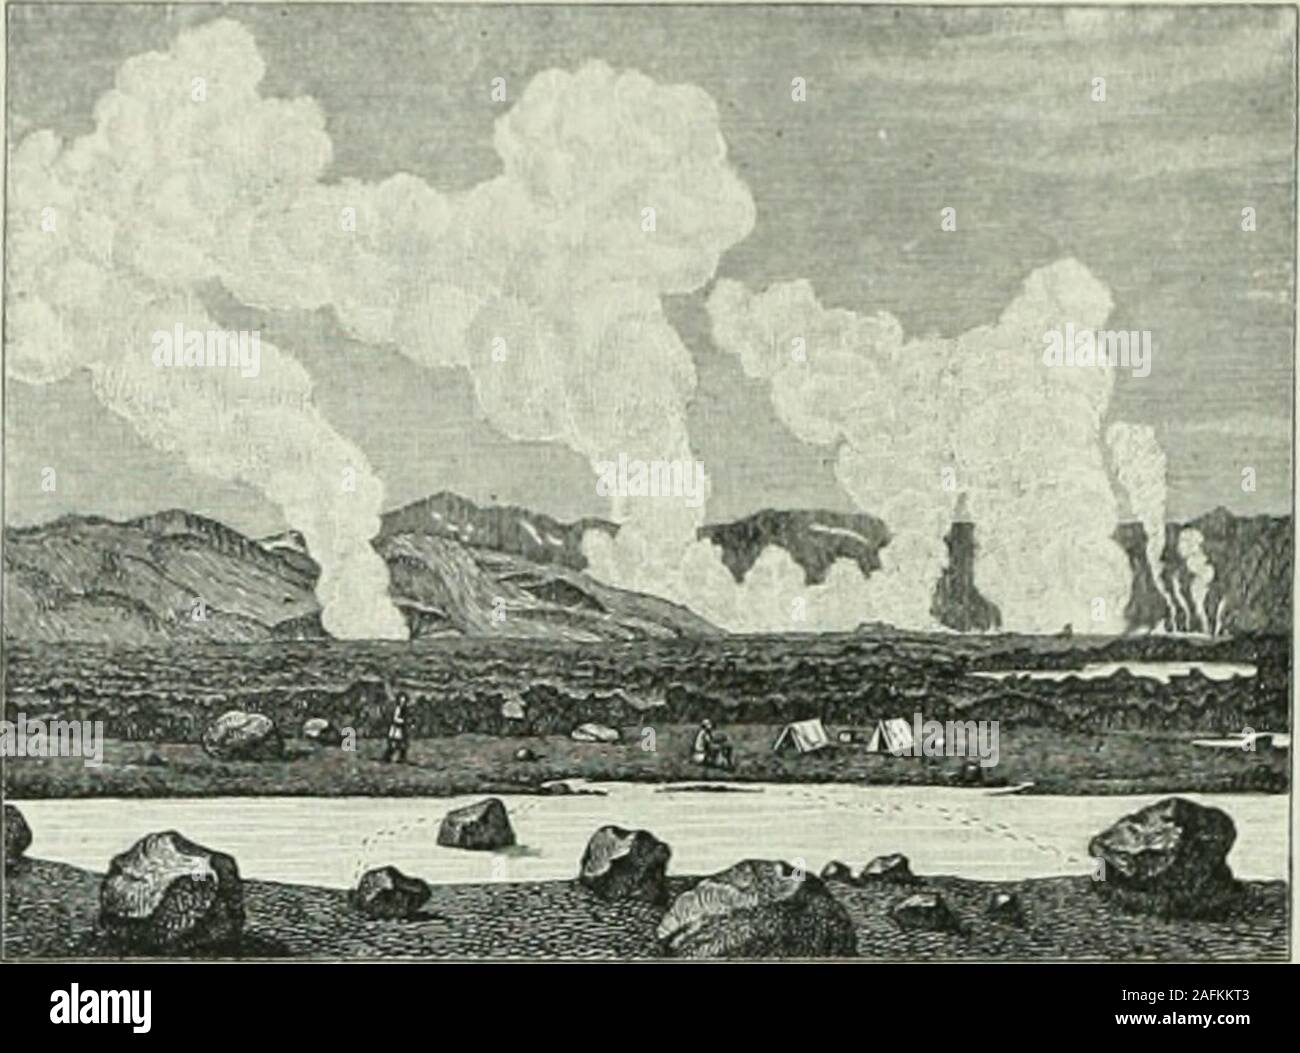 . Island am Beginn des 20 Jahrhunderts;. 10. Hekla. Nach D. Brnnn. 10 Die Natur.. 11. Kratertal des Vulkans Askja. Vulkan ist die Hekla (Haube); sie hat eine Höhe von 1557 Meternund hat in geschichtlicher Zeit 18 Ausbrüche, darunter einige sehrheftige, gehabt. 1693 wurde die Asche vom Winde bis nach Nor-wegen getragen, 1597 stiegen 18 Feuersäulen aus dem Berge auf,1766 hatte die Rauchsäule eine Höhe von 4700 Metern über demGipfel usw. Die Hekla hat oft grosse Verheerungen angerichtet; siewar schon im Mittelalter in ganz Europa bekannt, und viele Sagenund abergläubische Vorstellungen waren mit Stock Photo